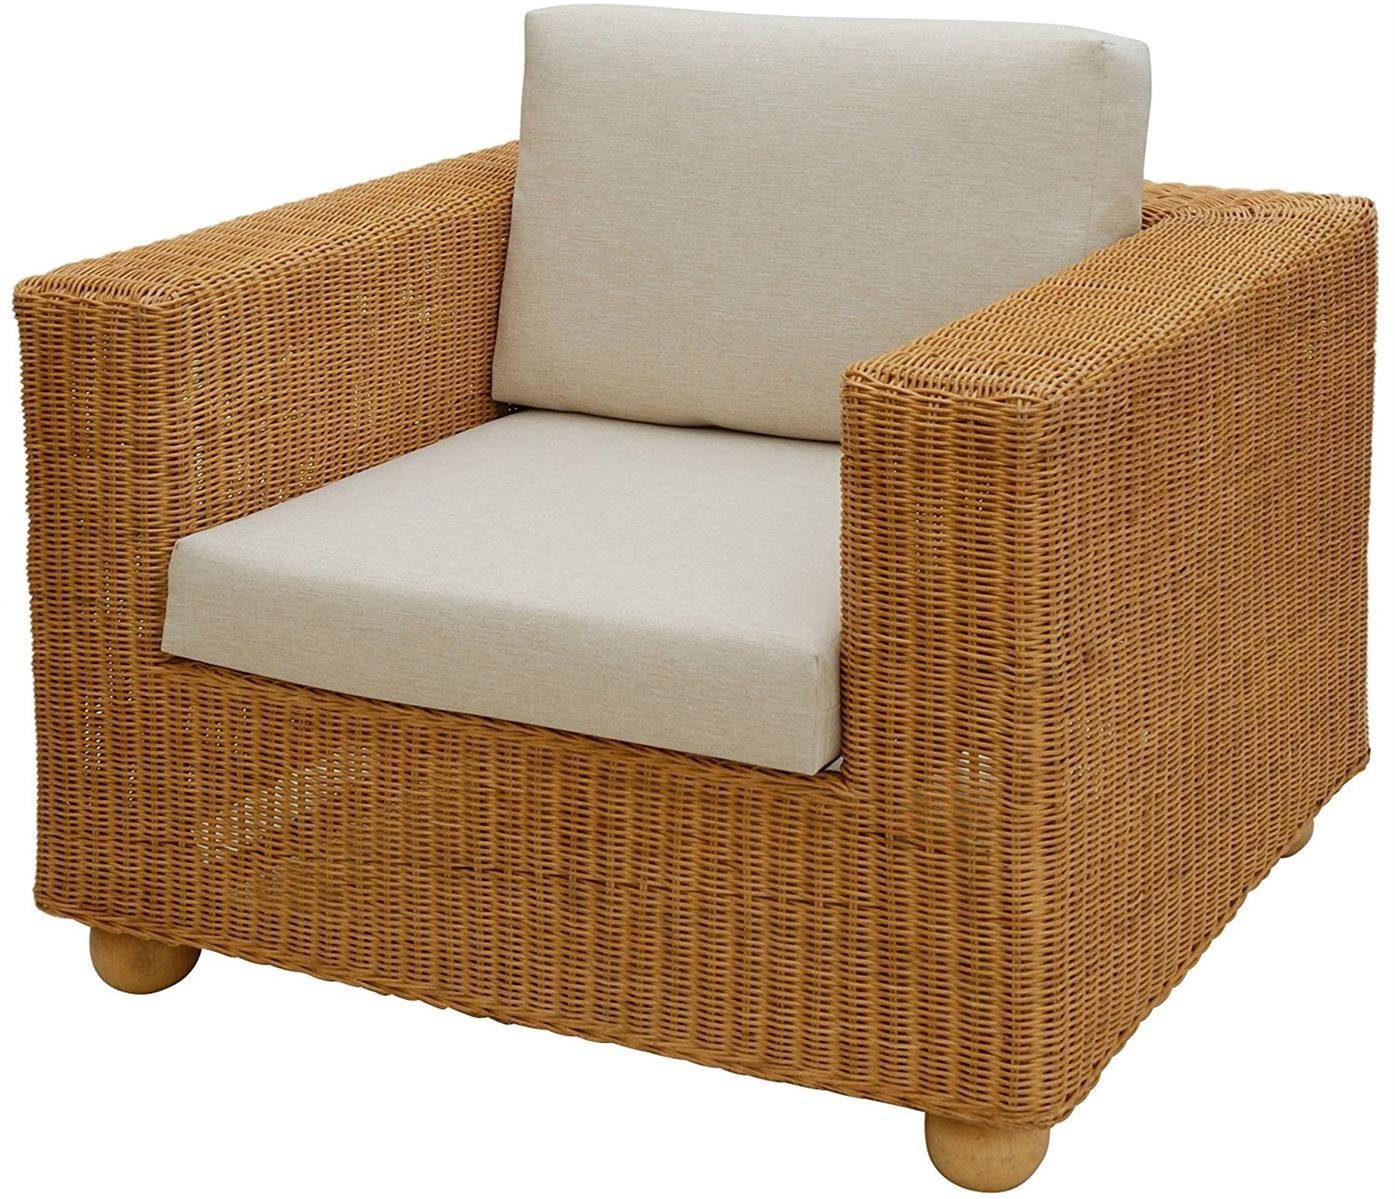 Krines Home Sessel Breiter Rattan-Sessel Lounge mit Sitz- und Rückenpolster Beige (Honig), Wohnzimmersessel aus echtem Rattan